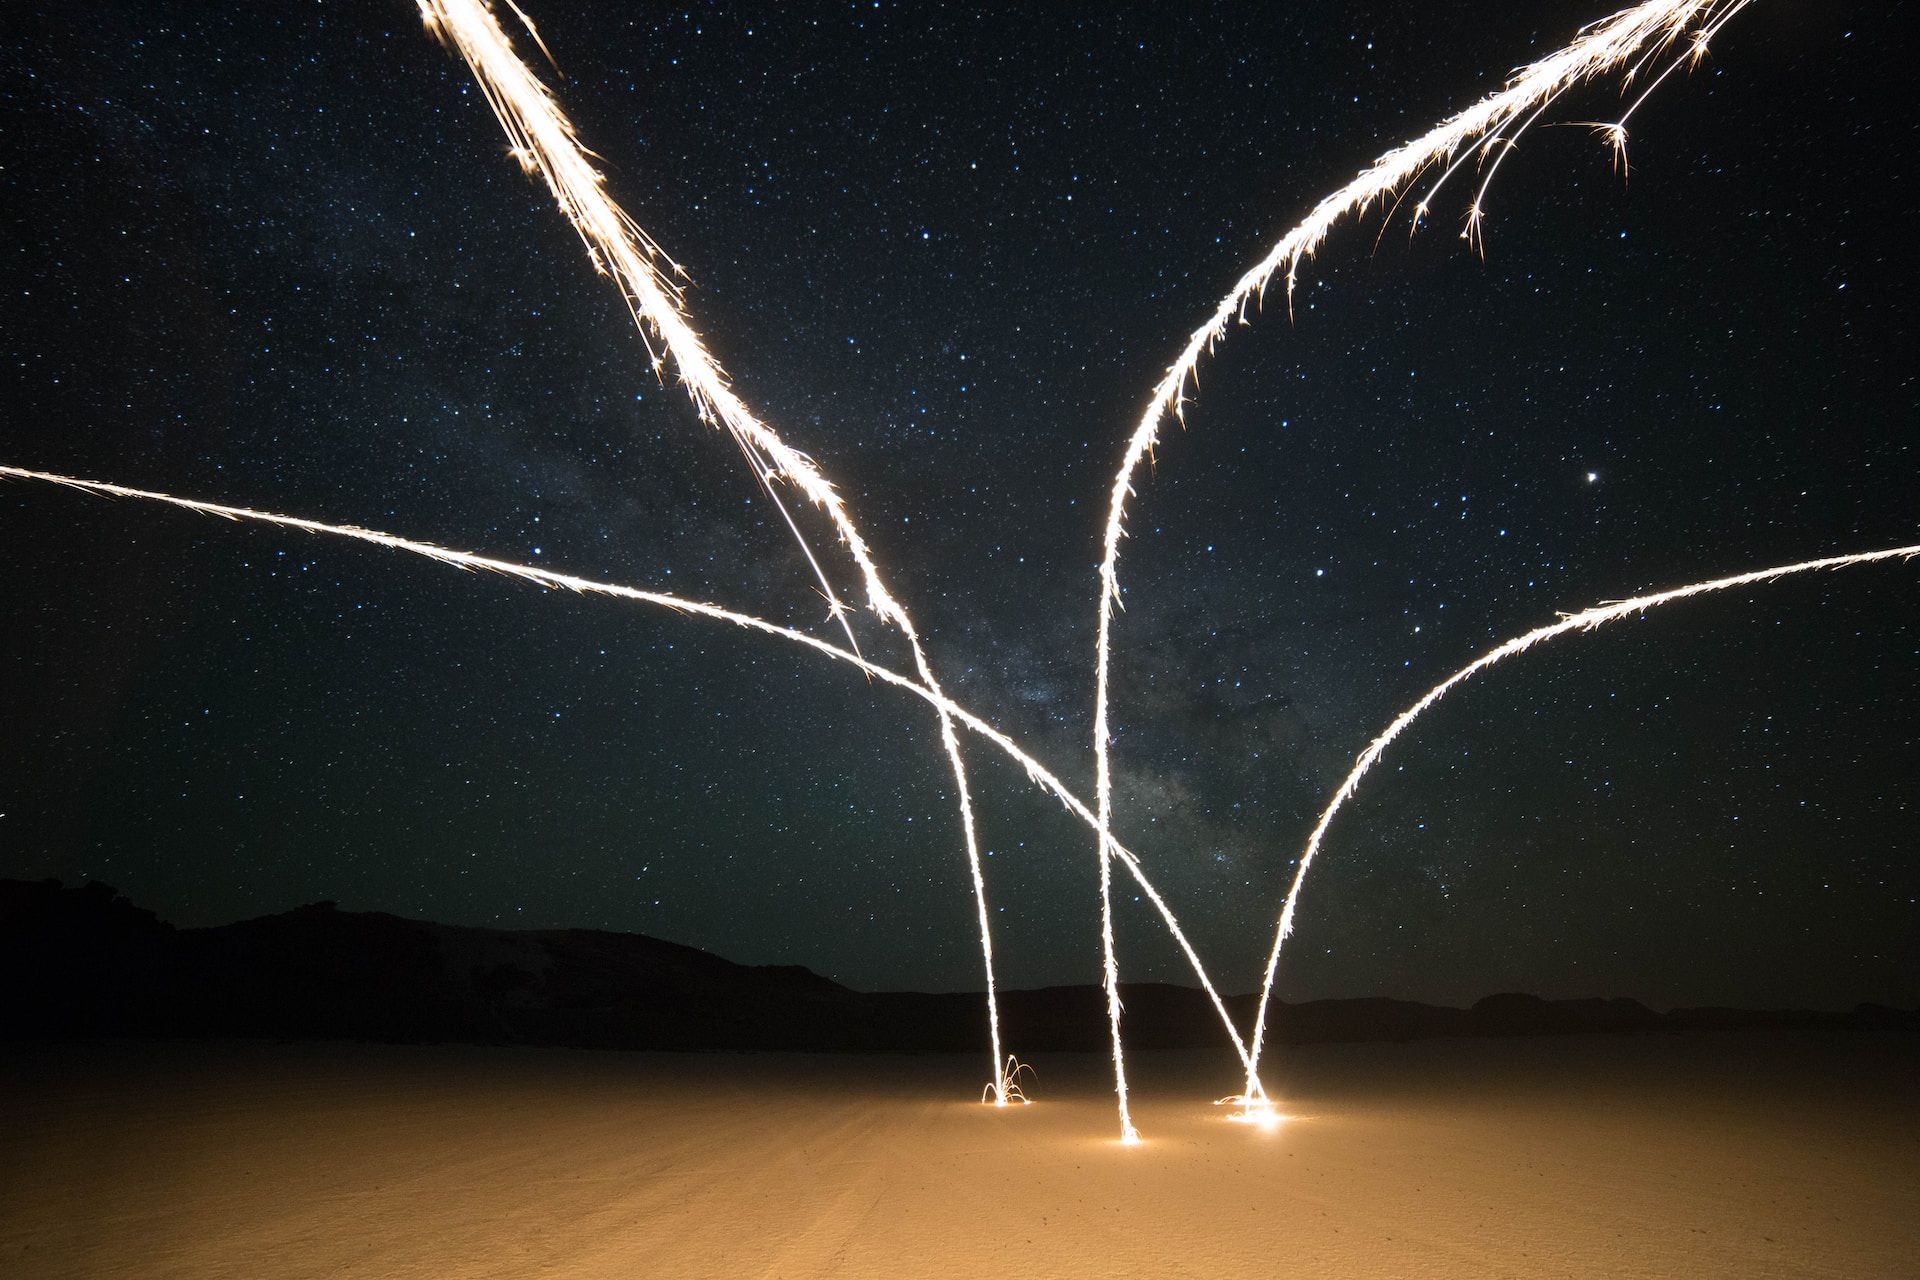 sorte de jaillissement de lumière ou d'eau dans le désert, de nuit - Photo de Meg Nielson sur https://unsplash.com/fr/photos/hcks1gMxUd4